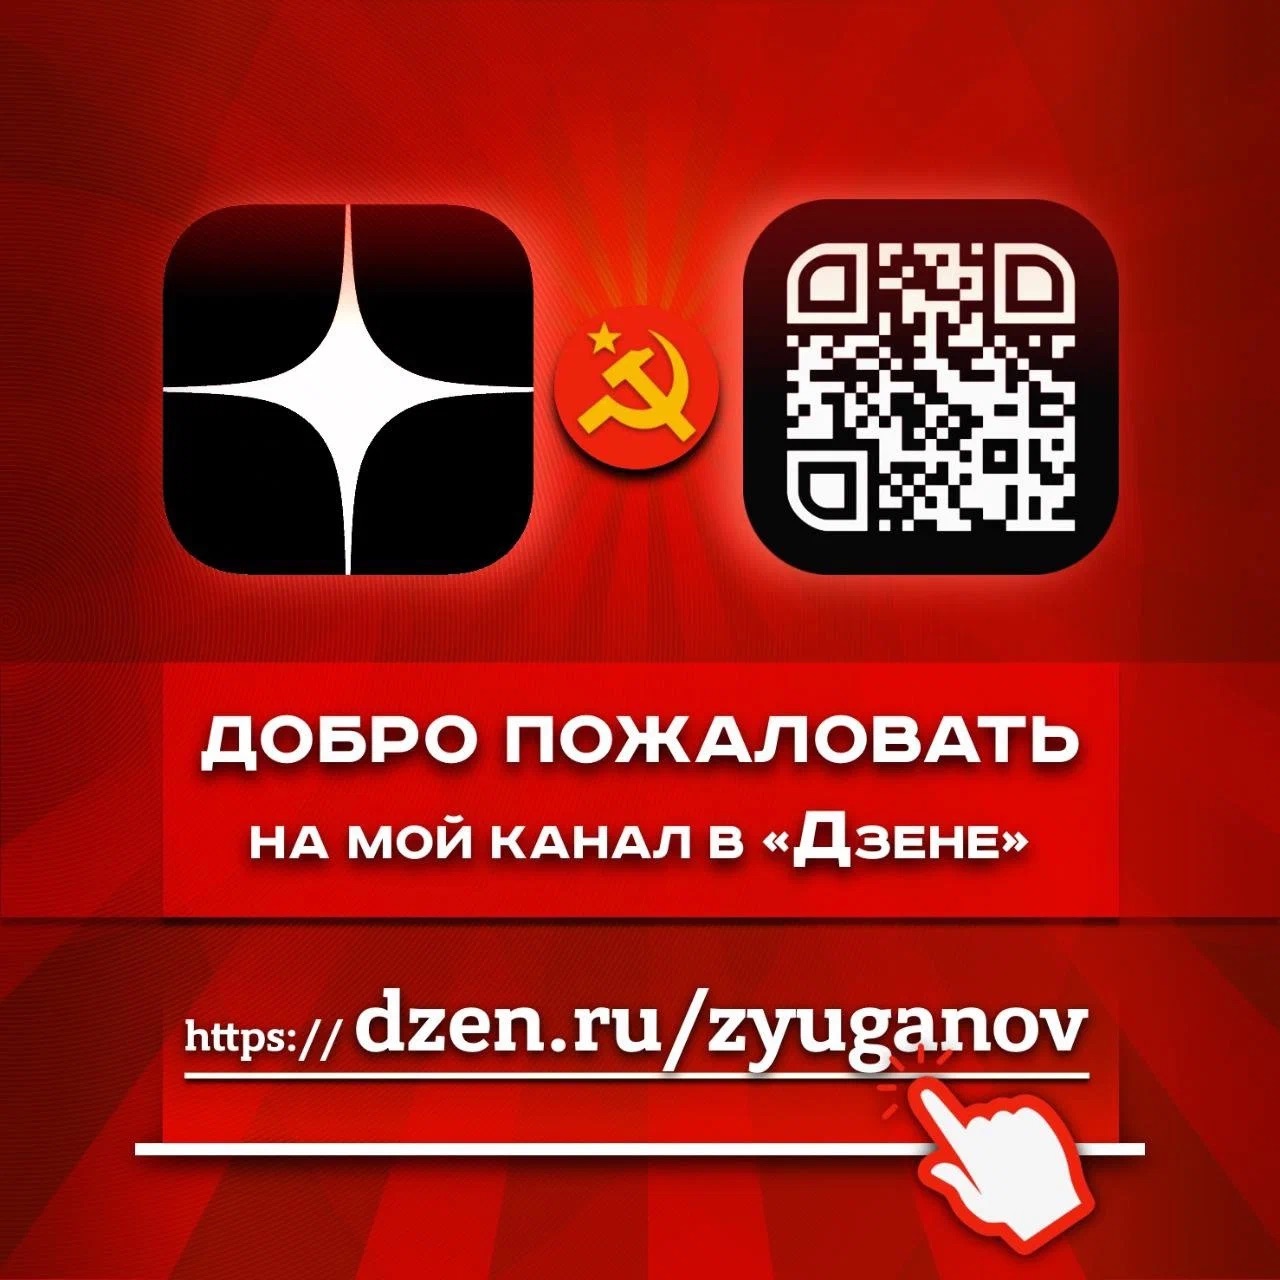 Подписывайтесь на новый Дзен-канал Геннадия Зюганова